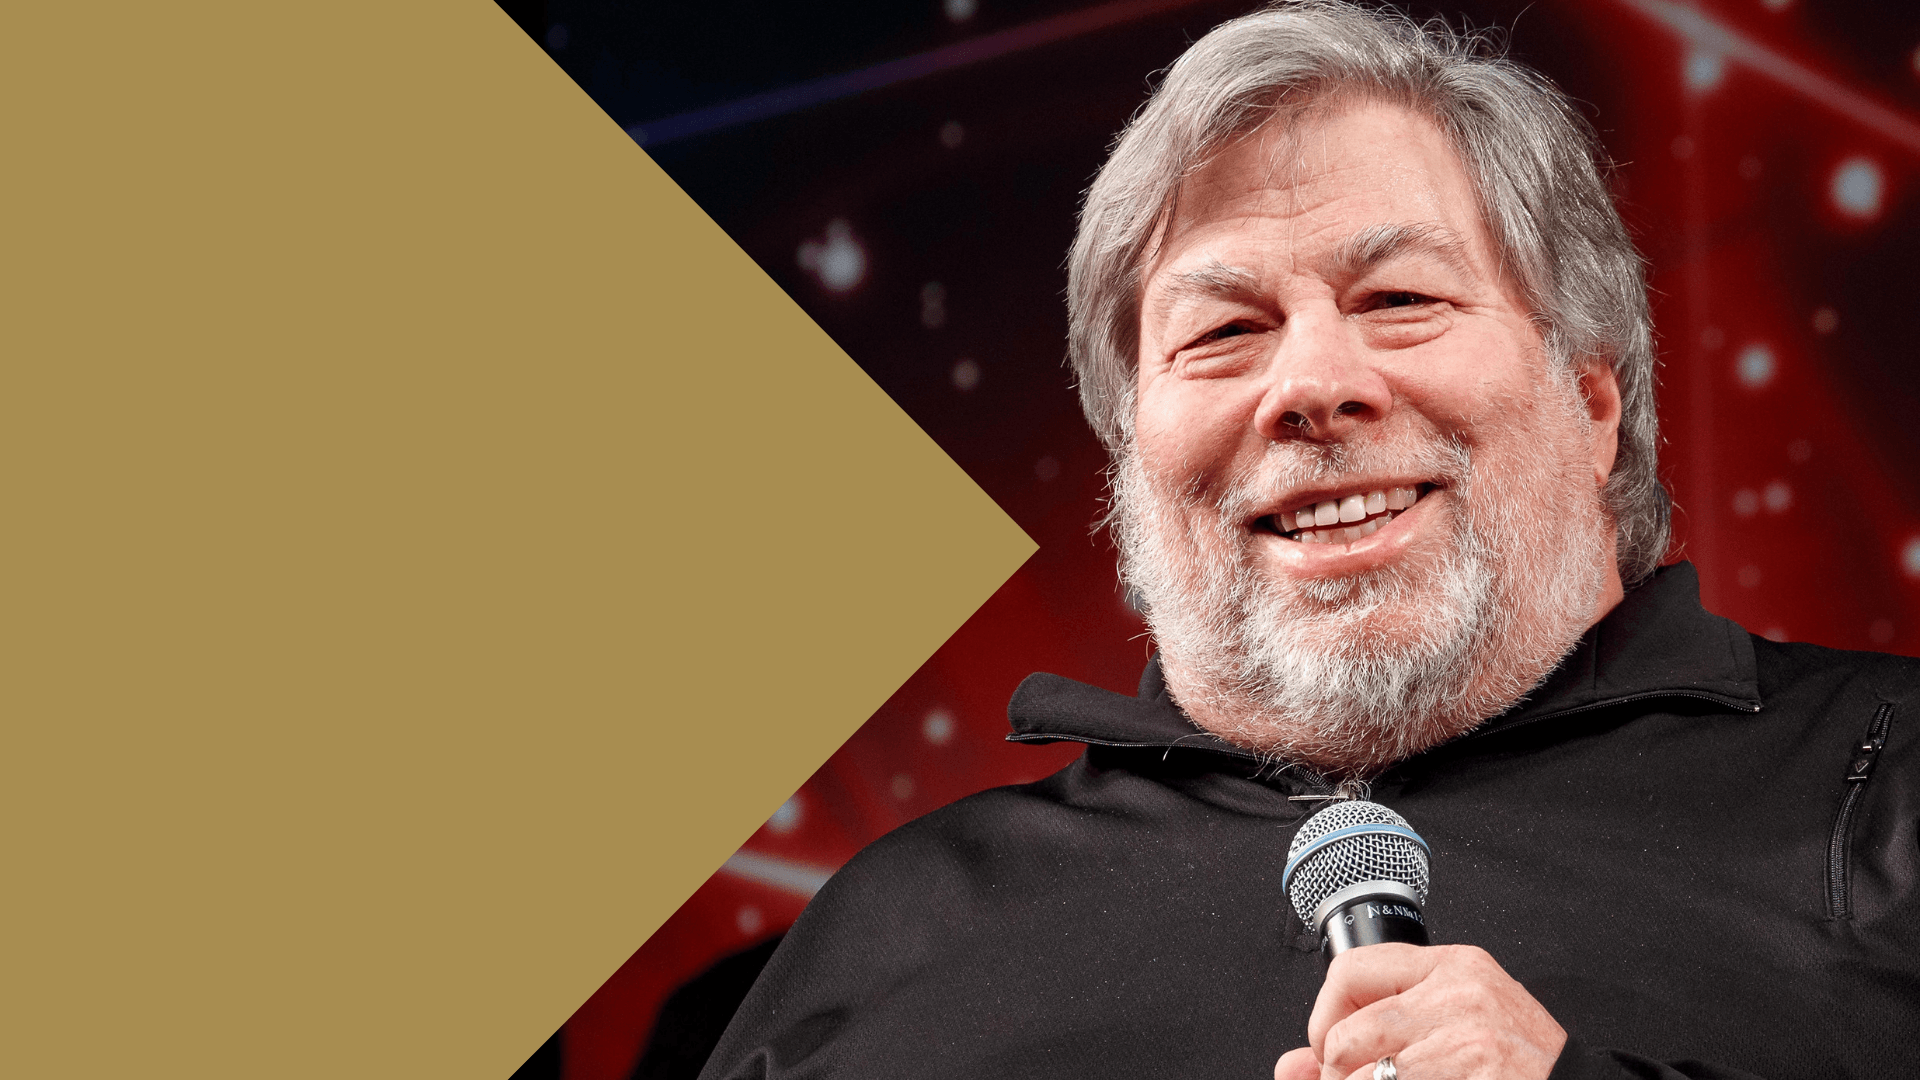 Meet Steve Wozniak in our office